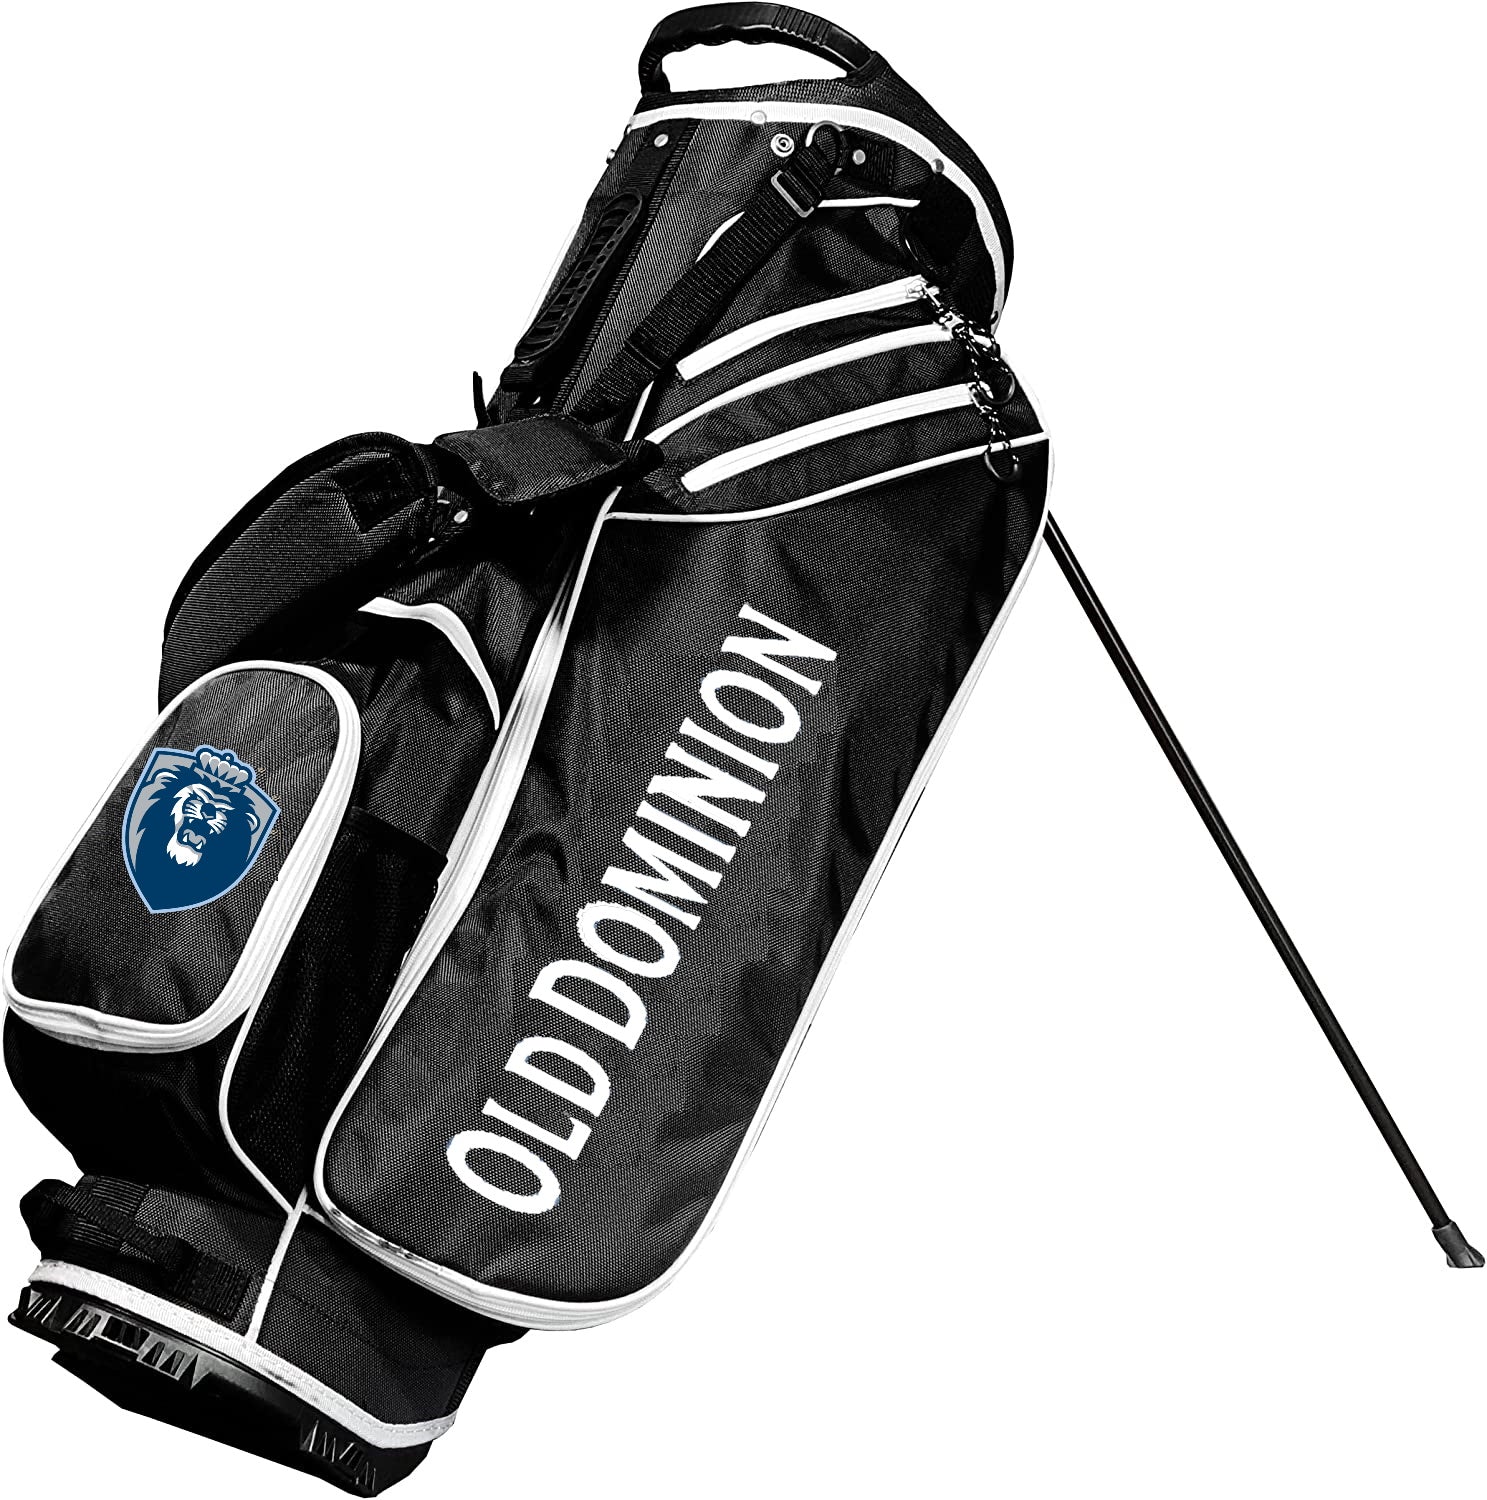 Old Dominion Monarchs Birdie Stand Golf Bag Blk